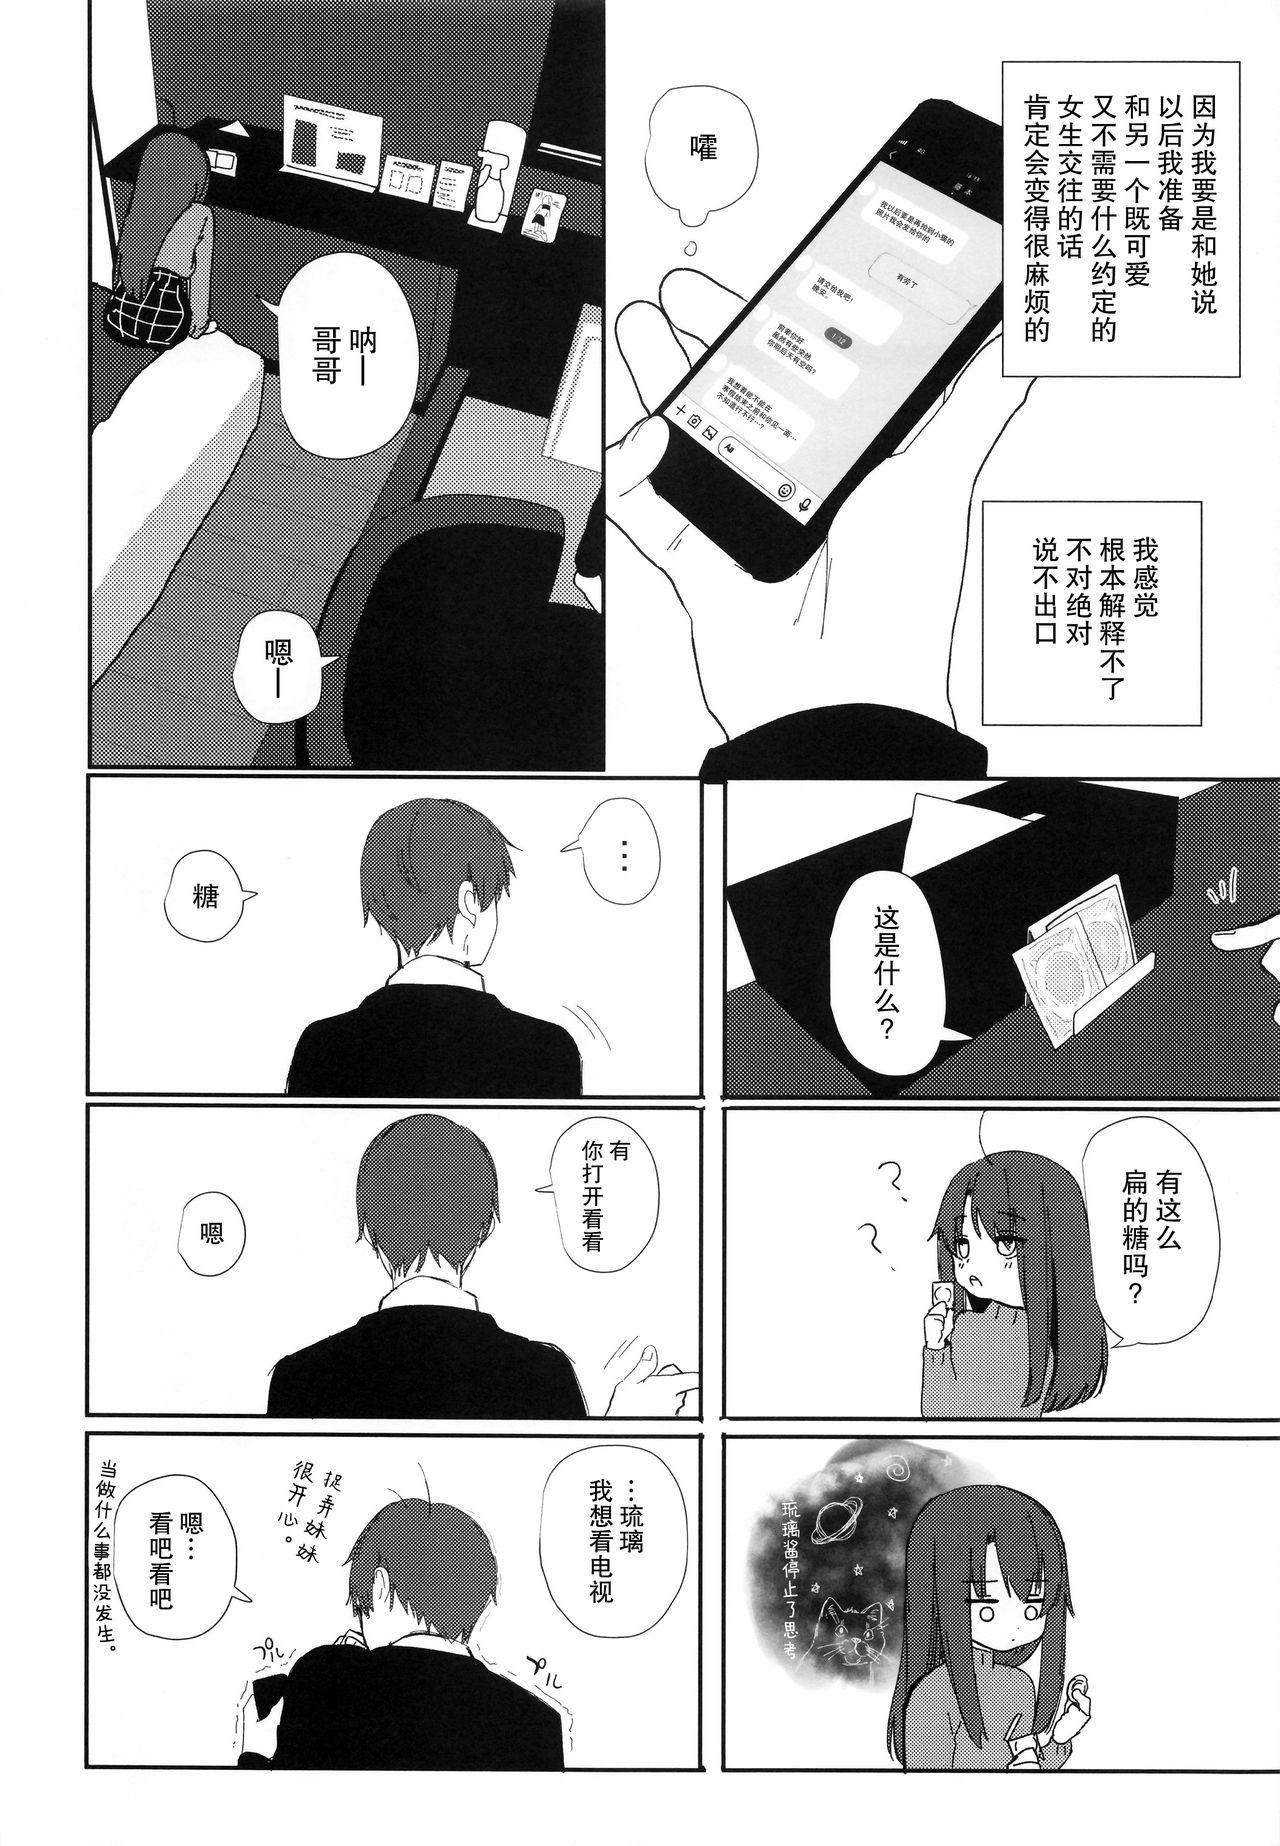 Tesao Nitamonodoosi 4 Kyoudai, LoveHo e Iku. - Original Gemidos - Page 9